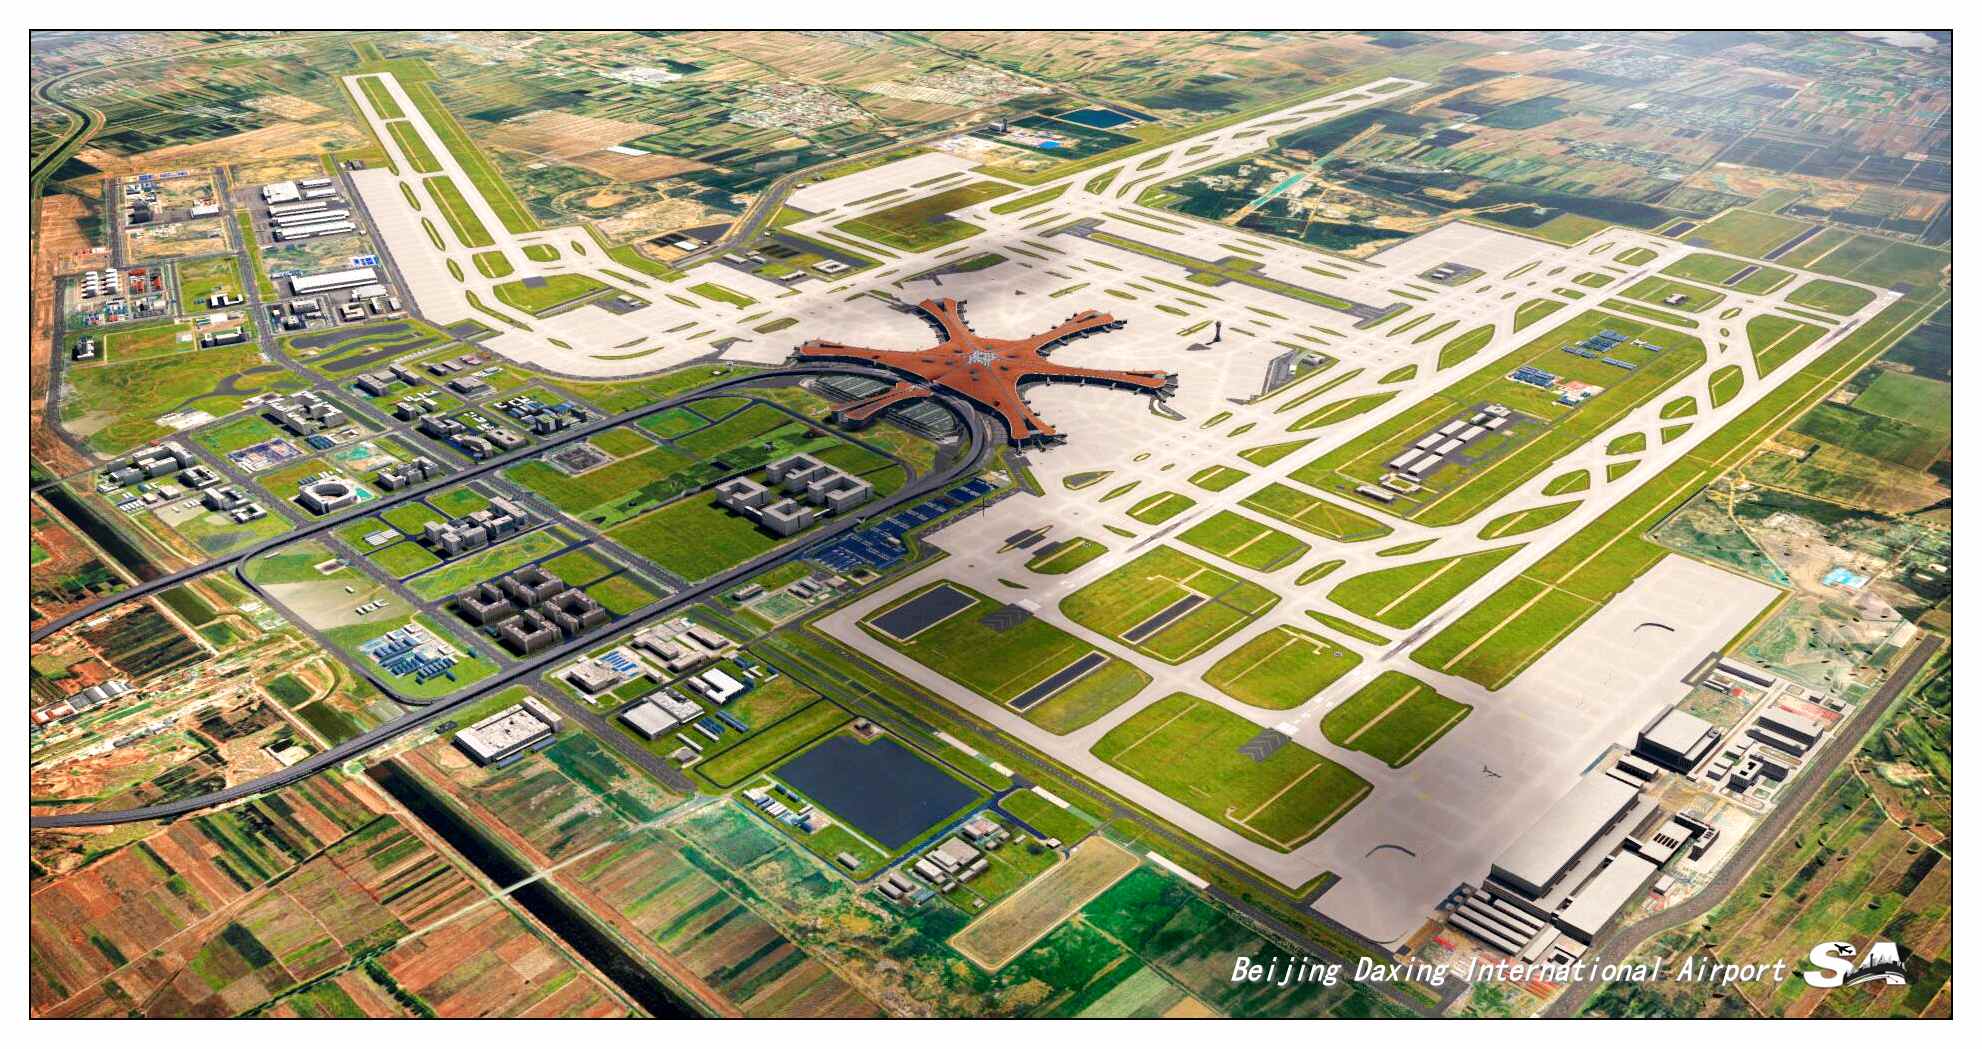 【X-Plane】ZBAD北京大兴国际机场-正式发布-2600 